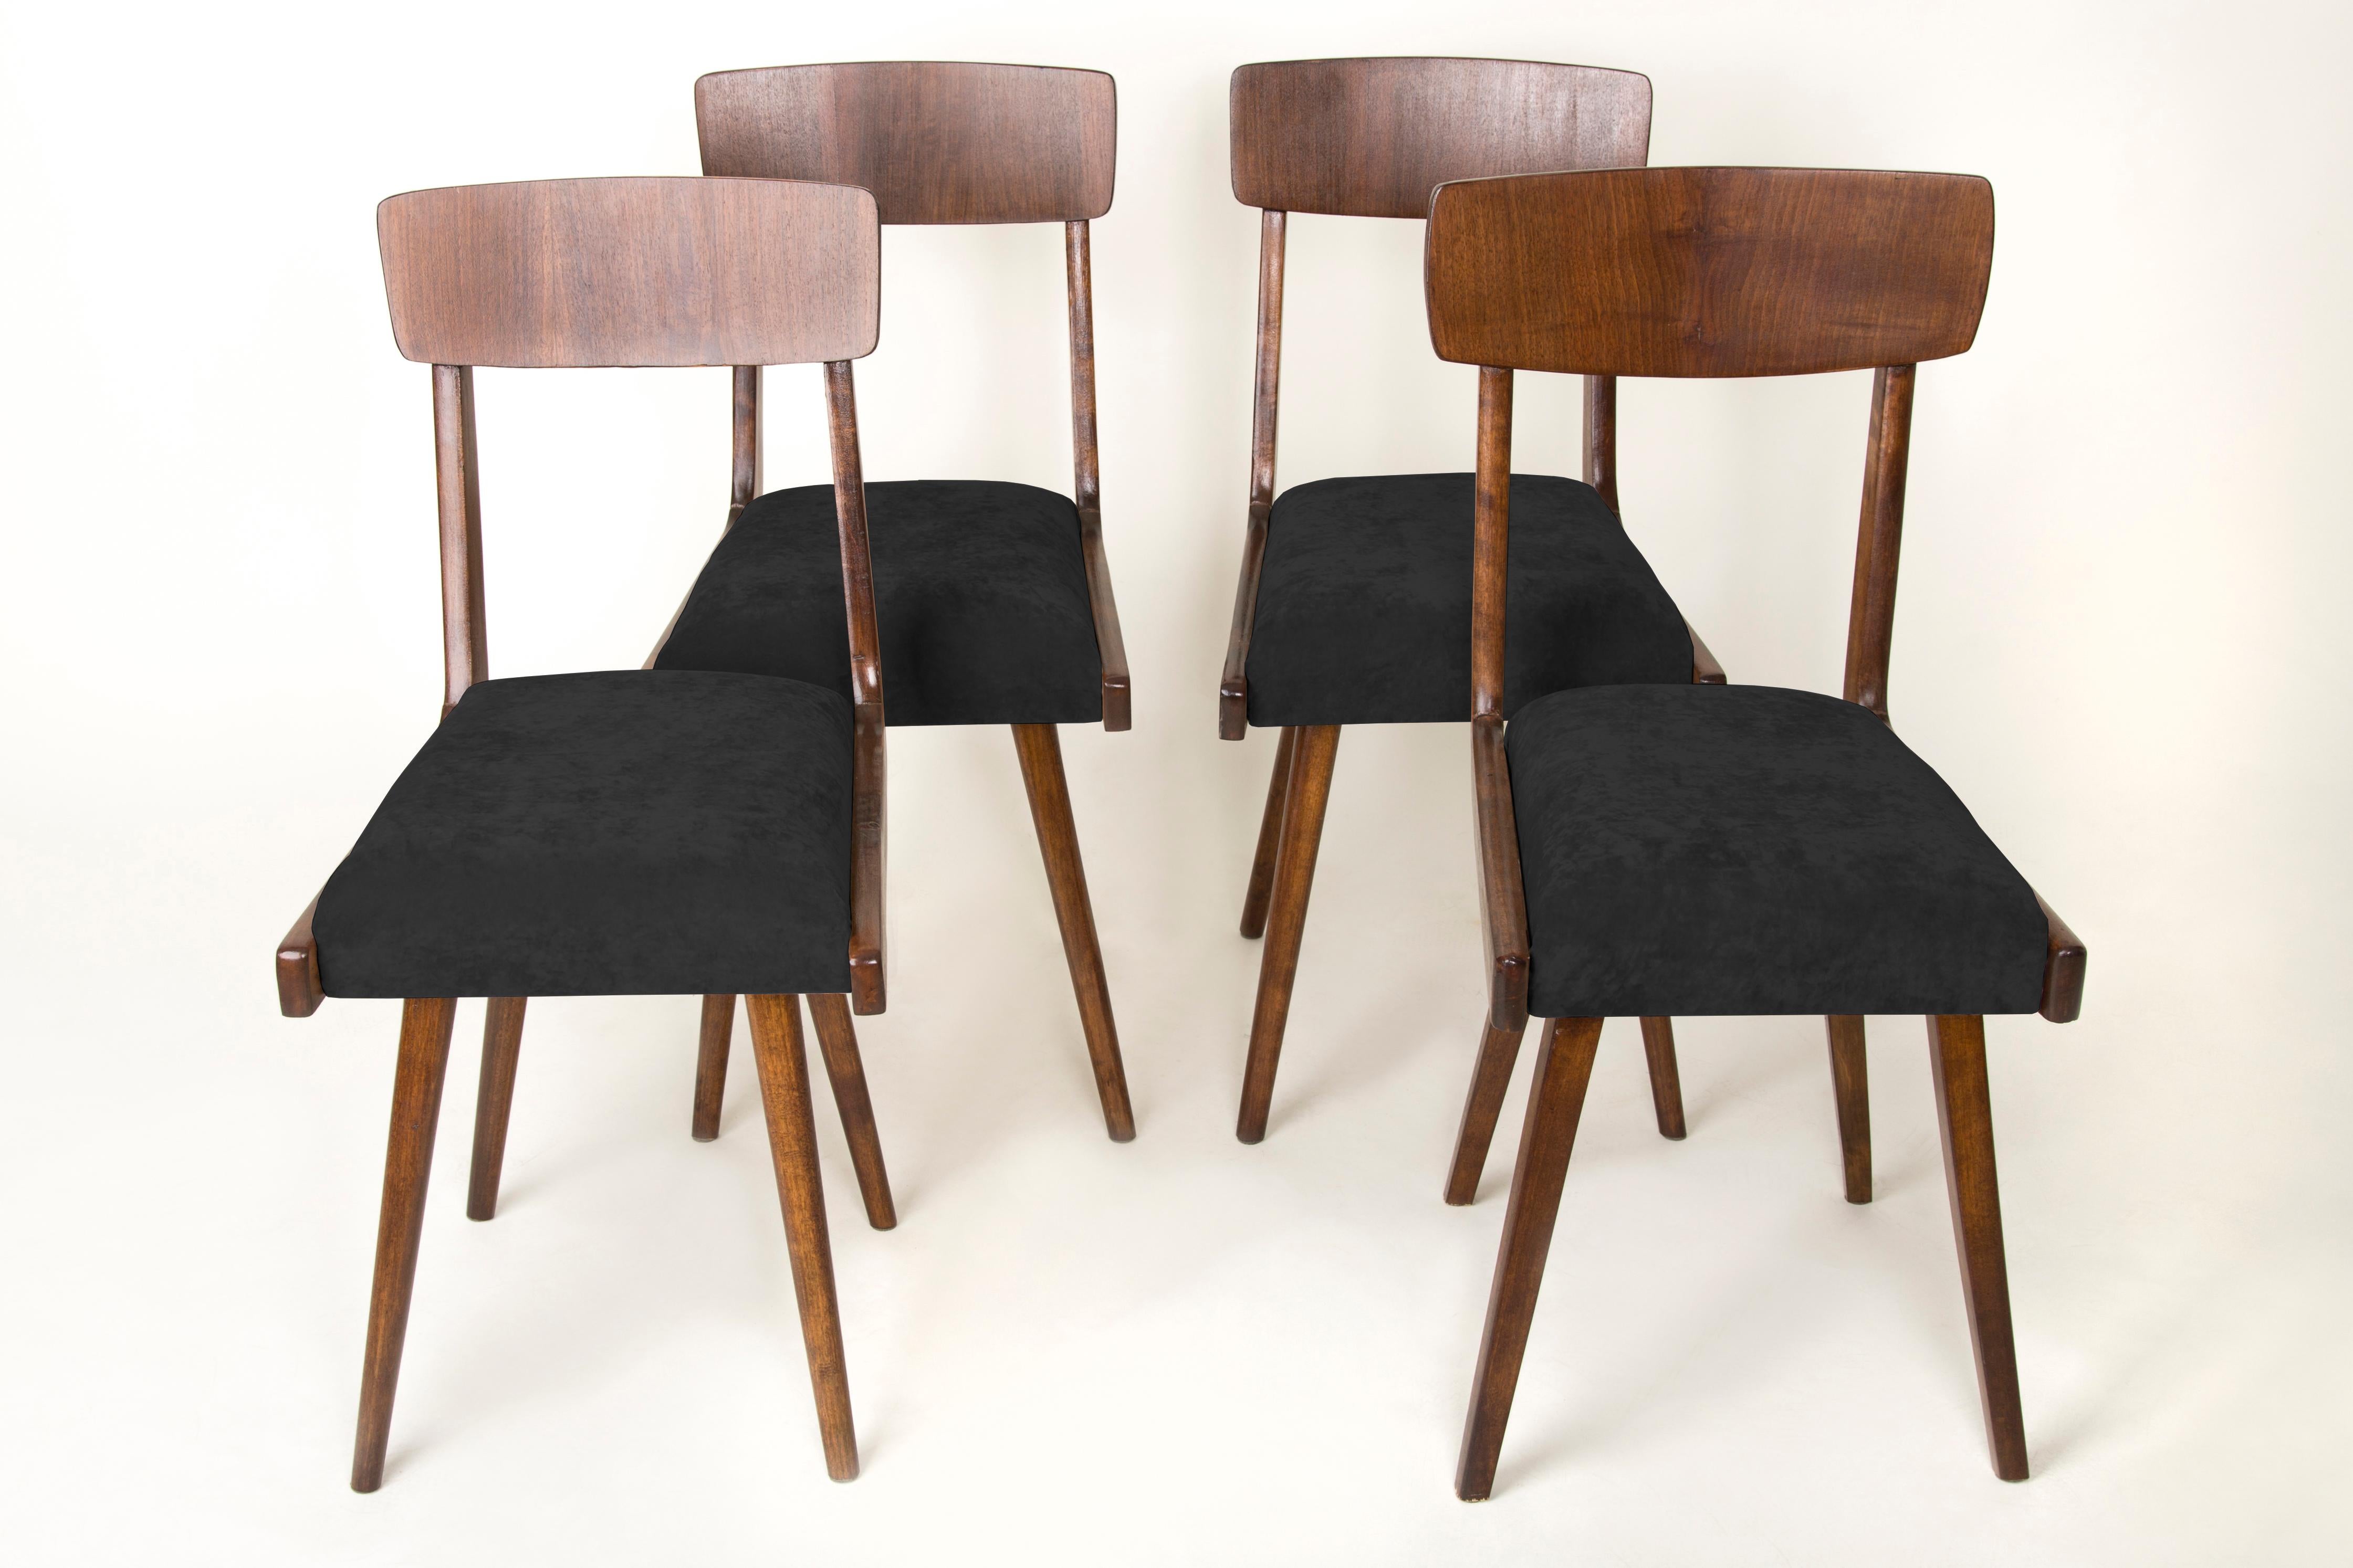 Stühle entworfen von Prof. Rajmund Halas. Sie wurden aus Buchenholz hergestellt. Sie wurden komplett neu gepolstert, die Holzarbeiten wurden aufgefrischt. Die Sitze waren mit dunkelblauem, weichem Samt bezogen. Sie sind stabil und sehr formschön.